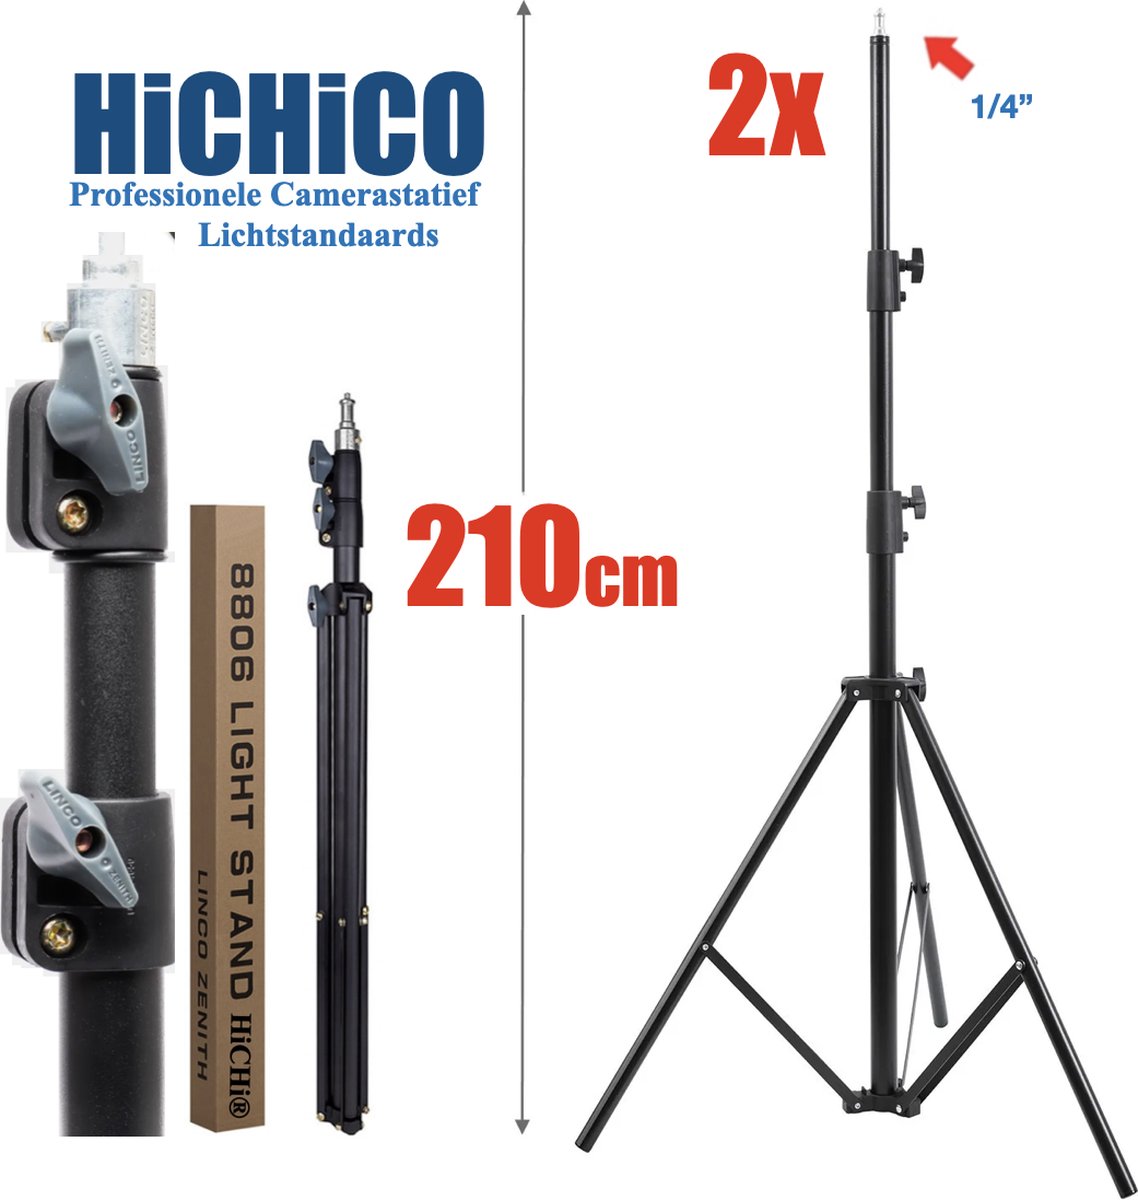 HiCHiCO® 2 stuks lichtstandaards - metallic instelbare 92-200 cm donkergrijs duty ondersteuningsstandaard voor fotostudio softbox, studioscherm, flitslicht, Spiegelreflexcamera reflector en andere apparatuur